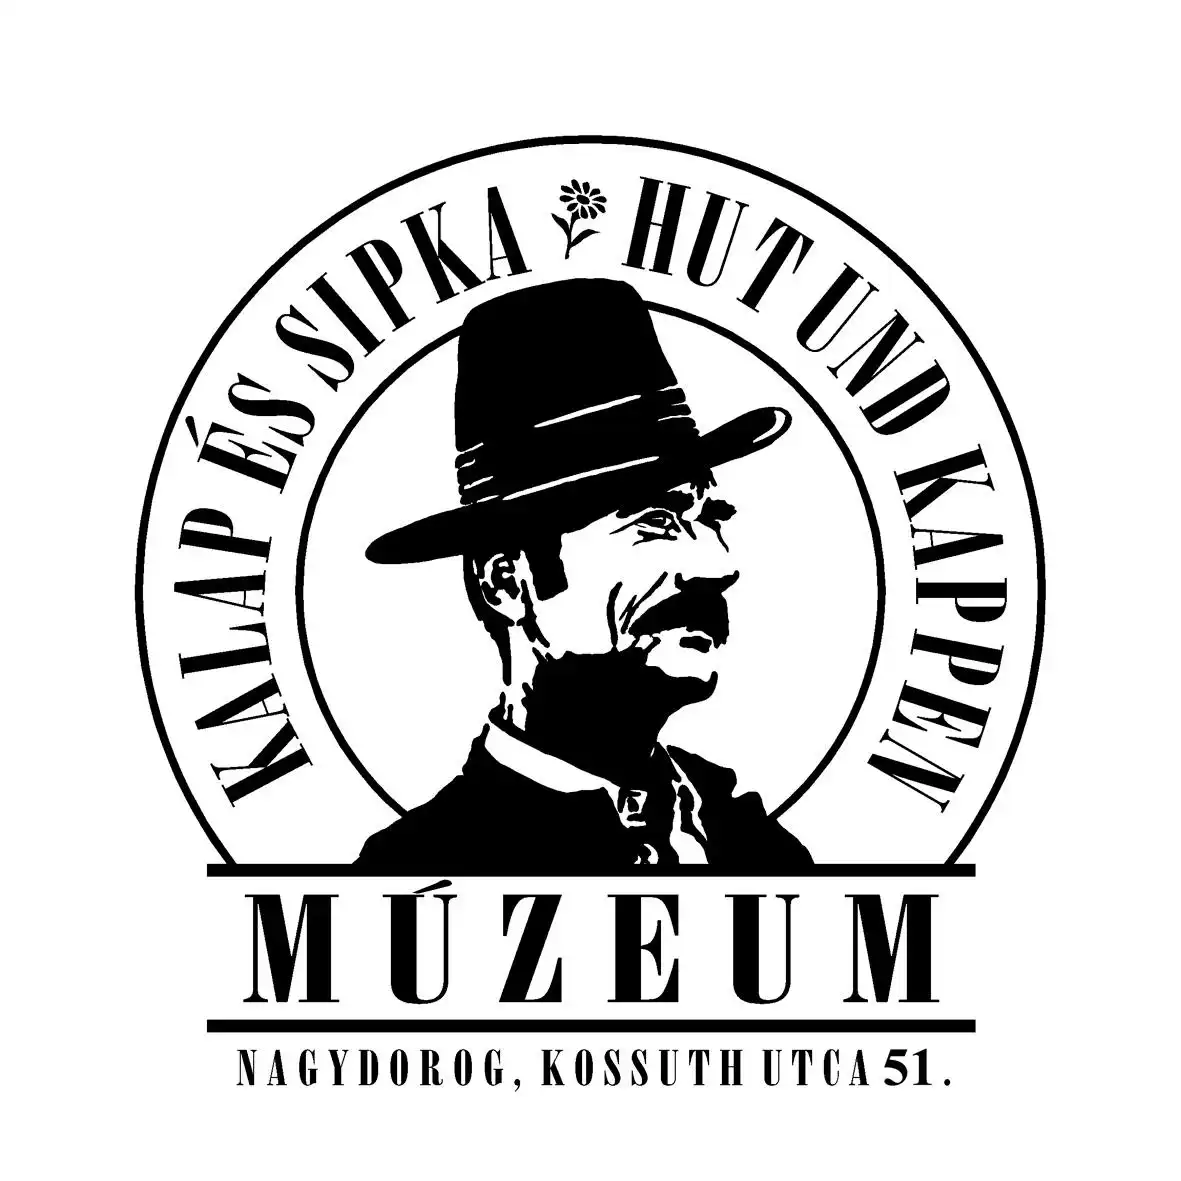 Kirandulastervezo-Nagydorog-Sipkamuzeum.webp